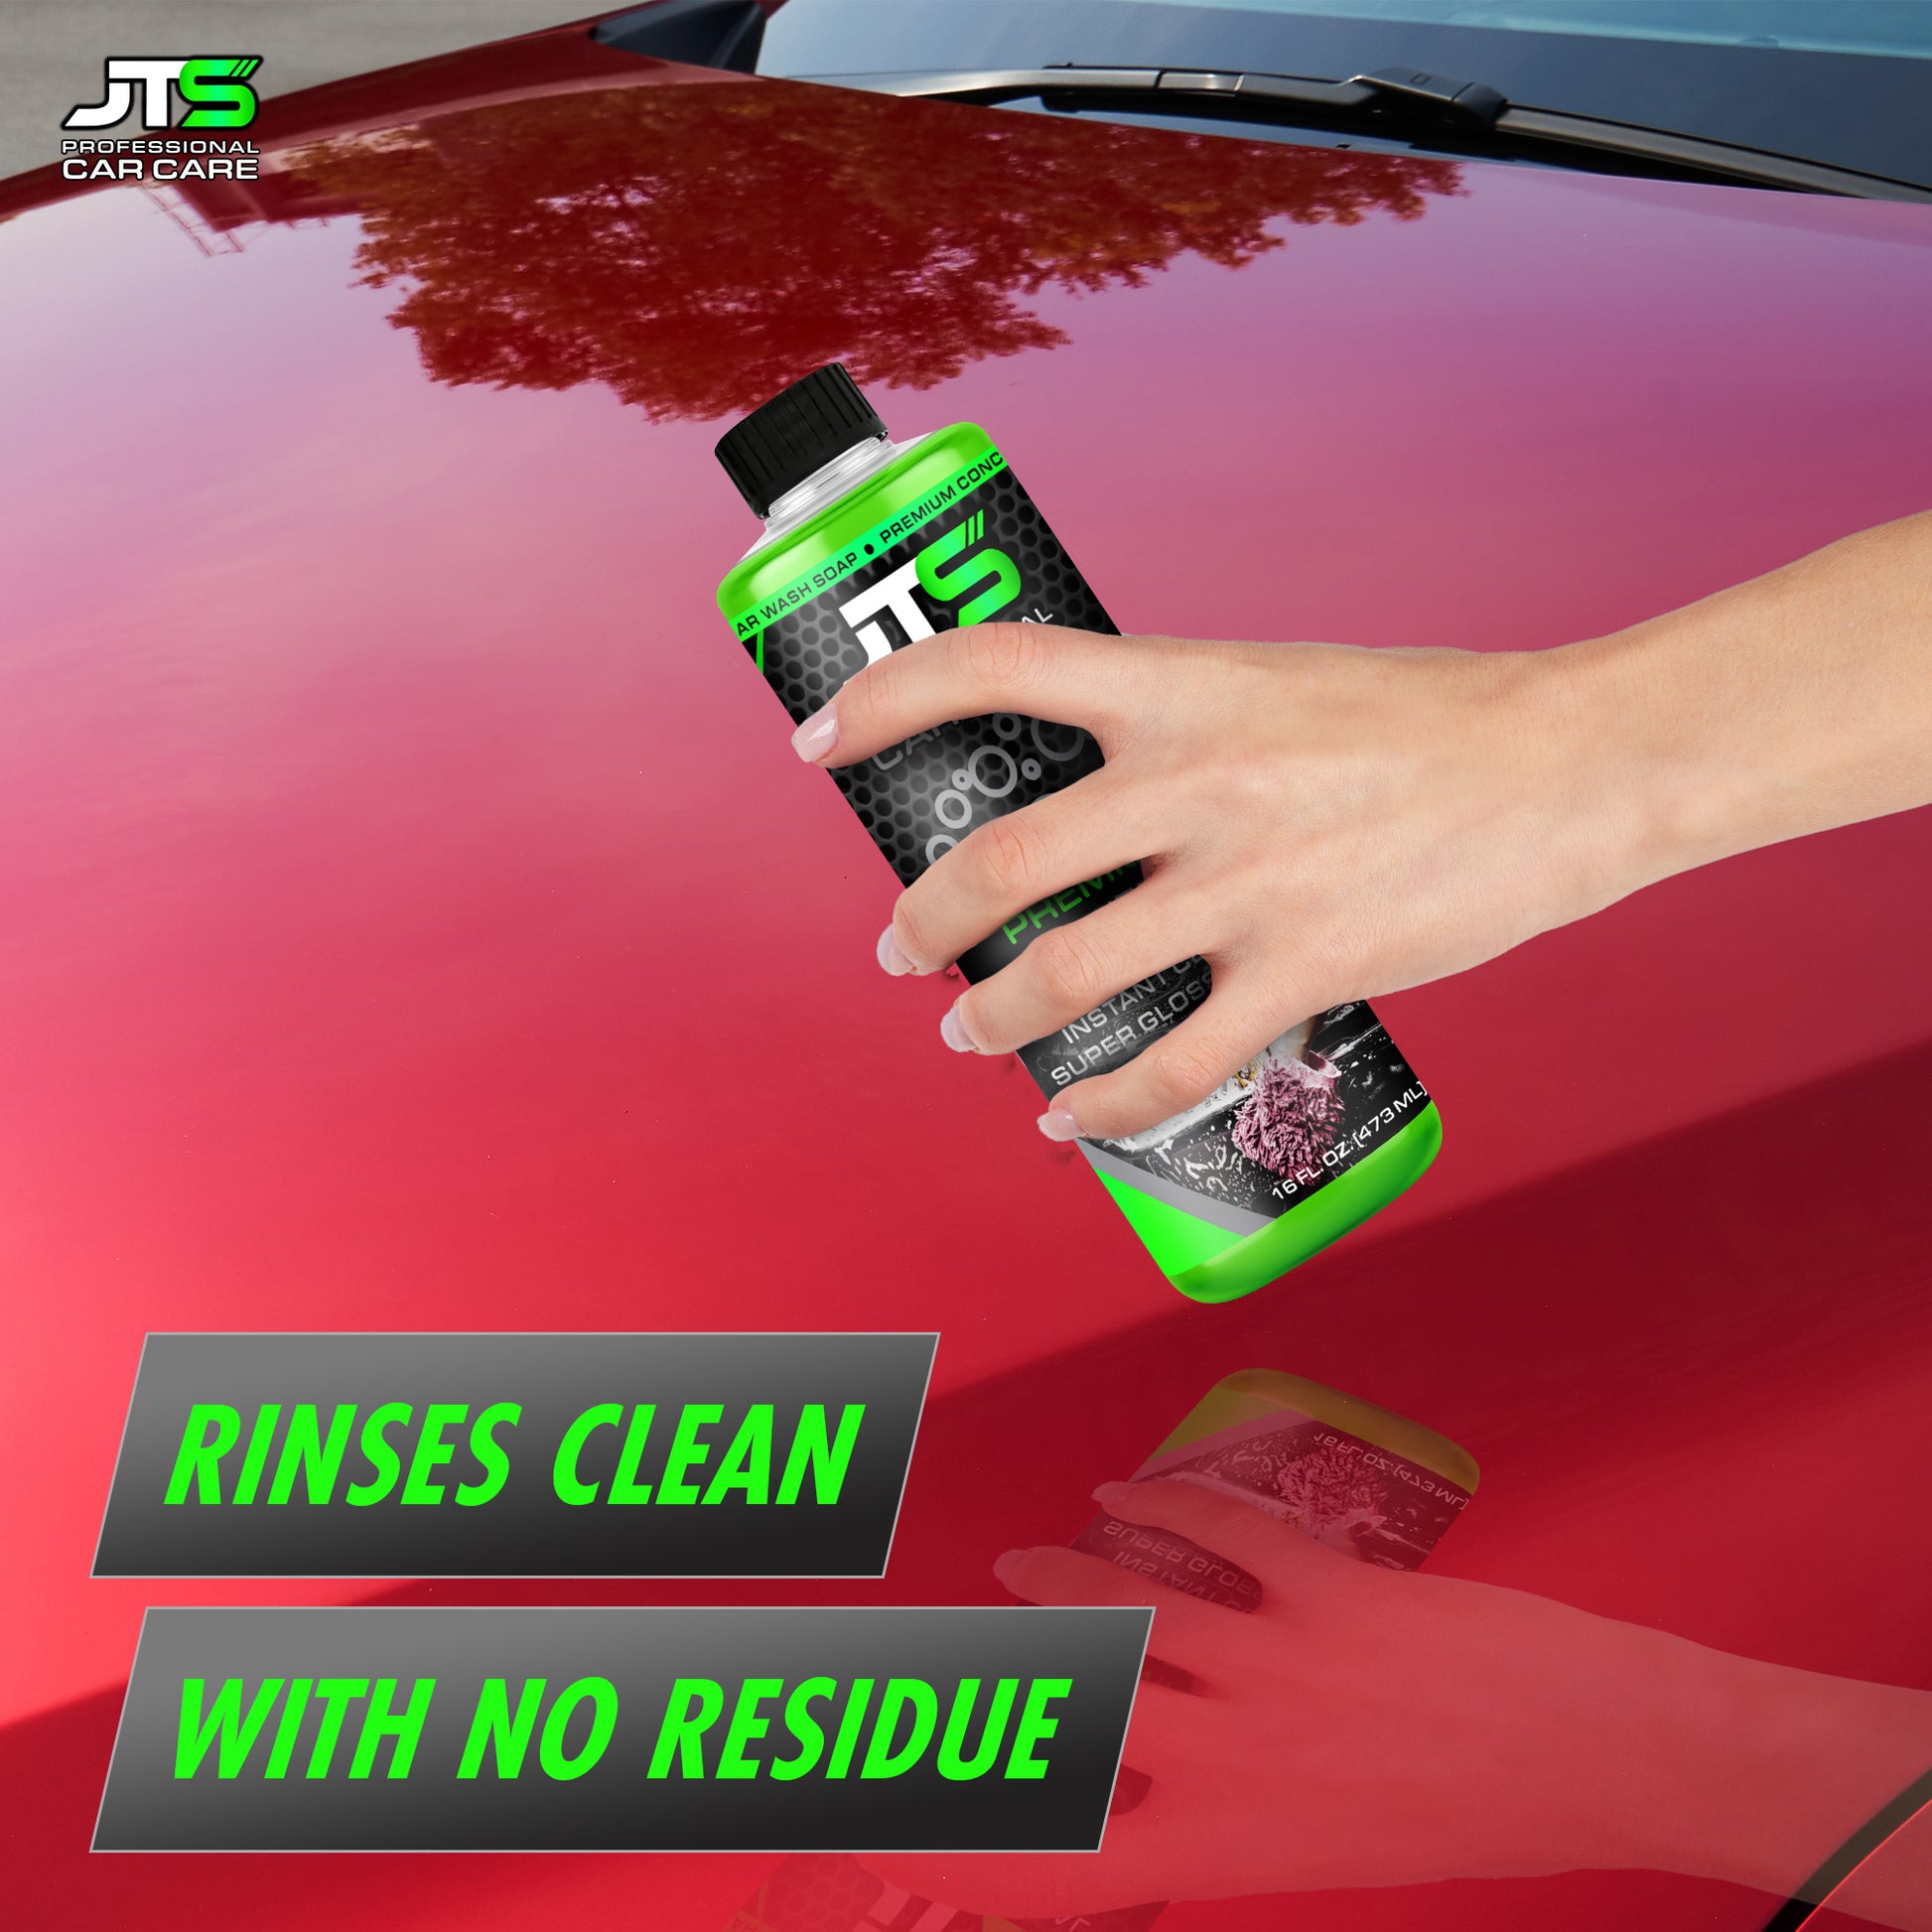 Total Car Interior Cleaner for Vehicle Detailing & Restoration